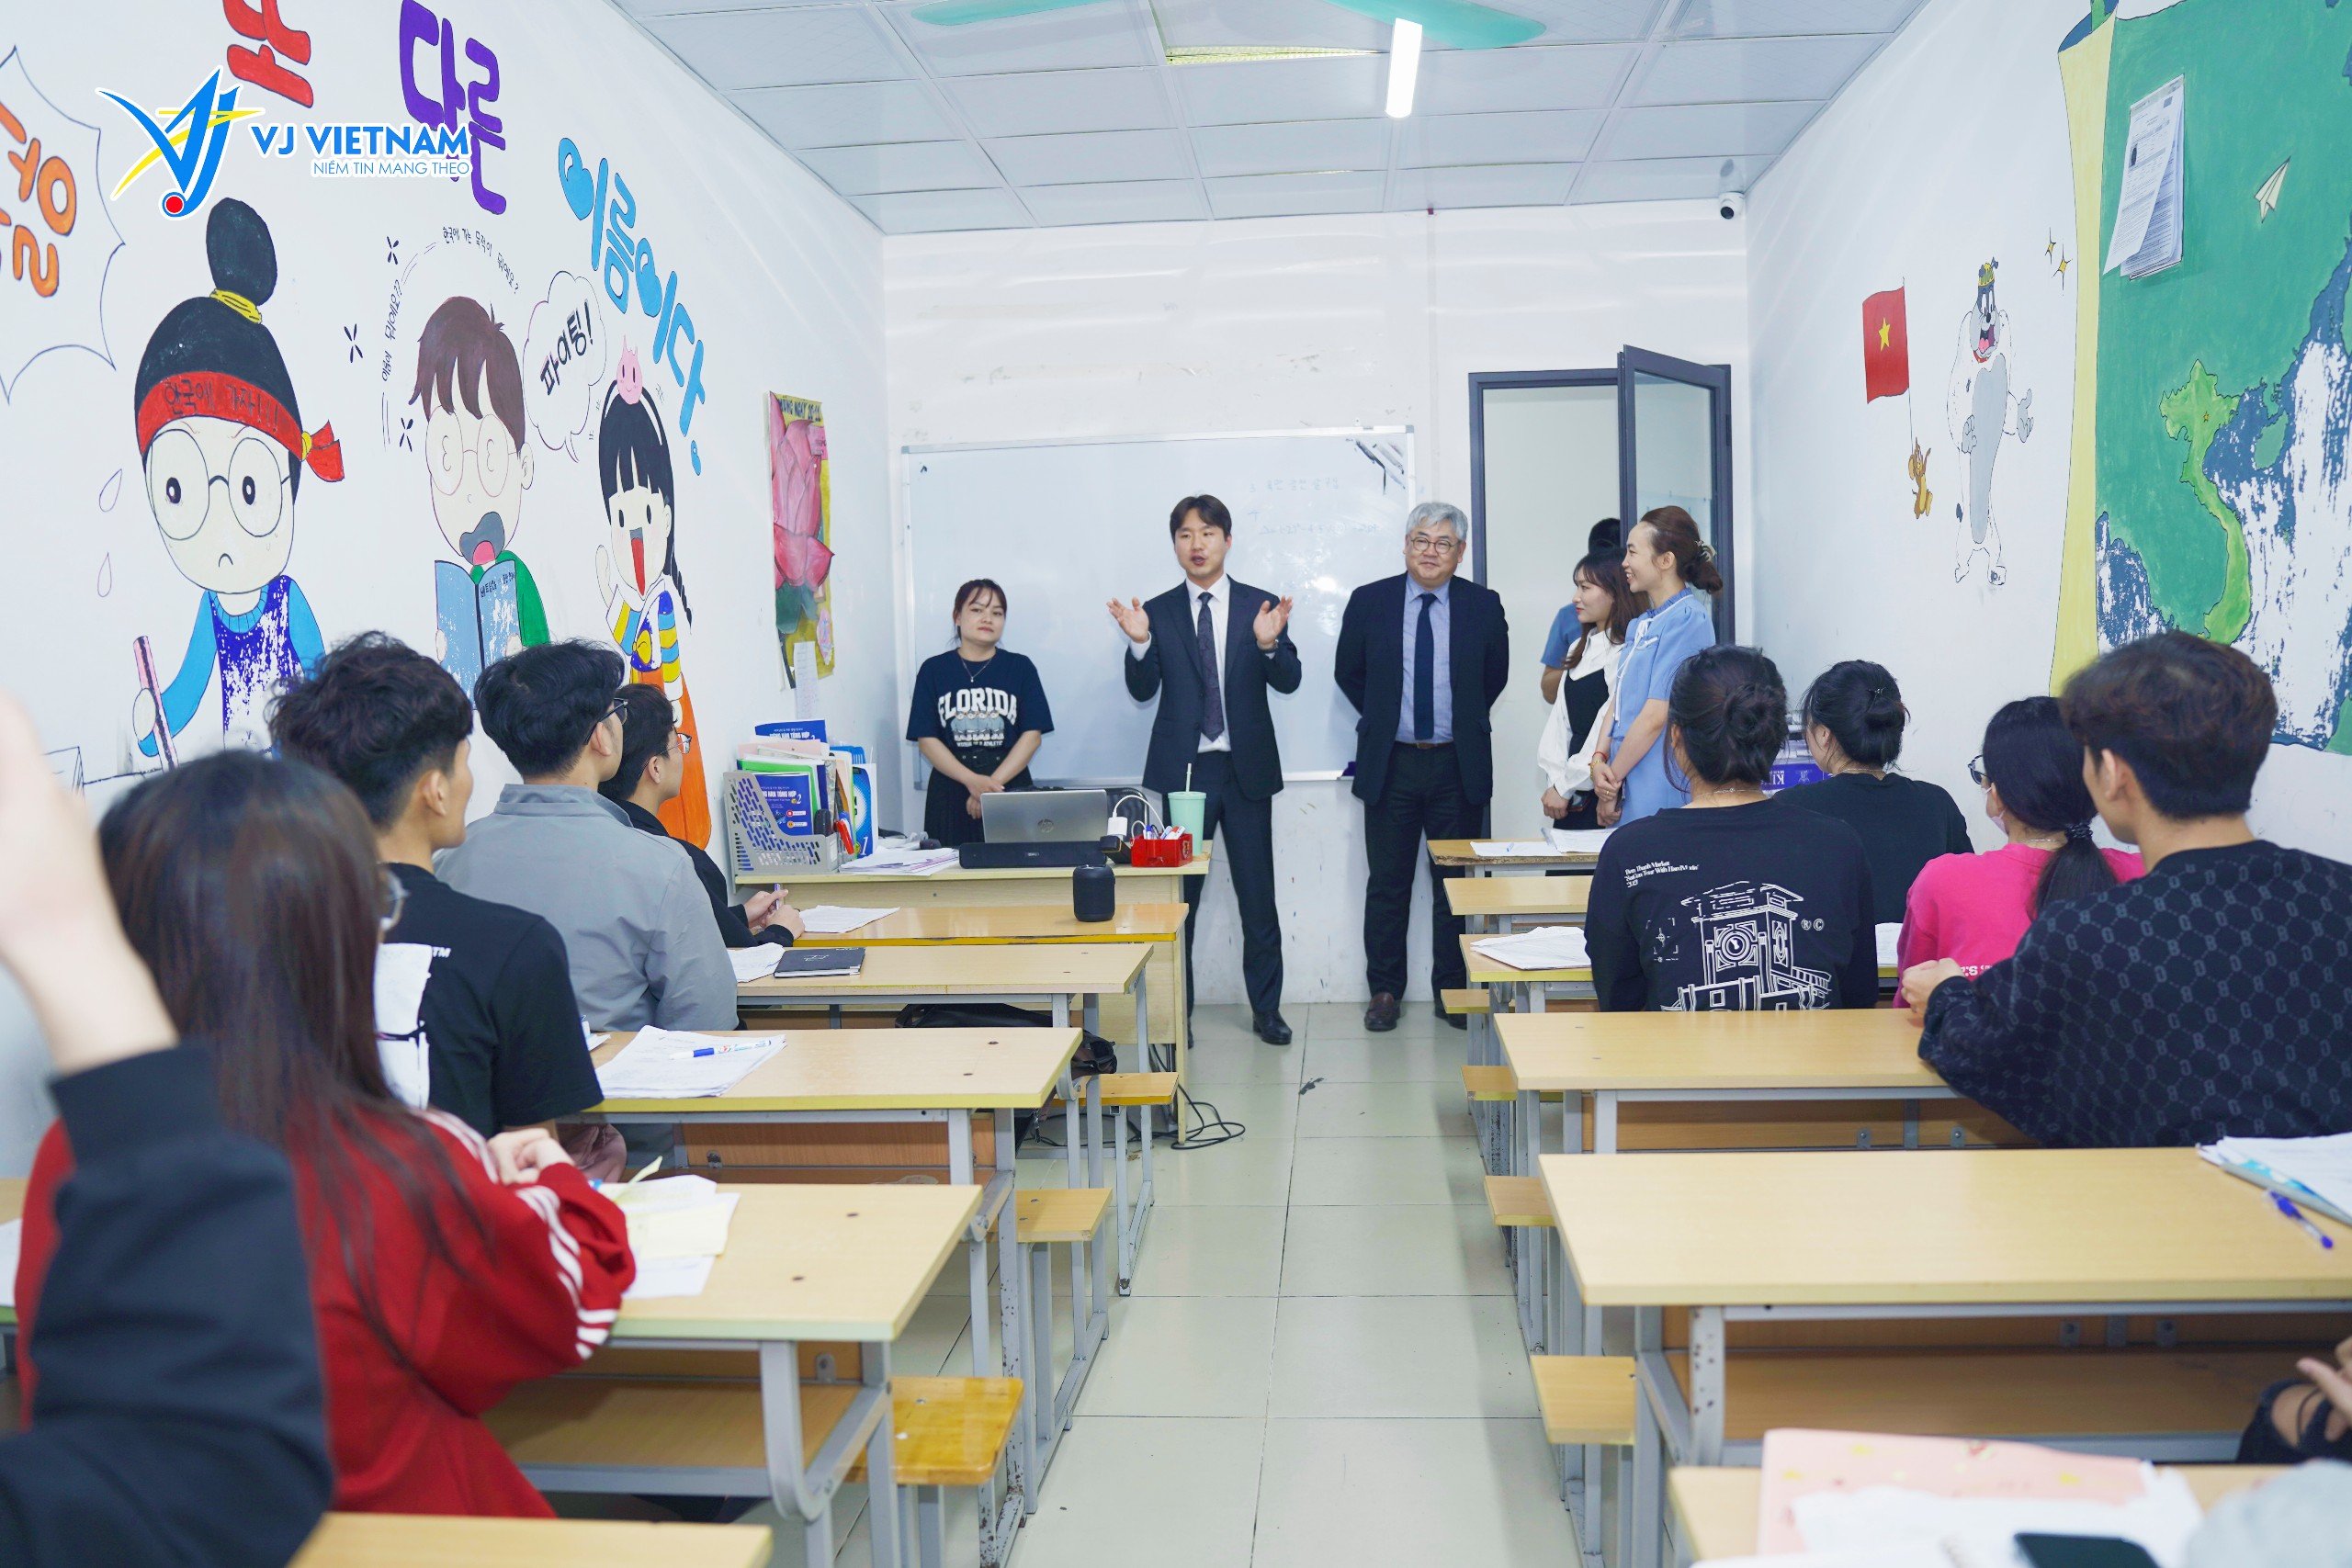 Cao đẳng Saekyung thăm VJ Việt Nam